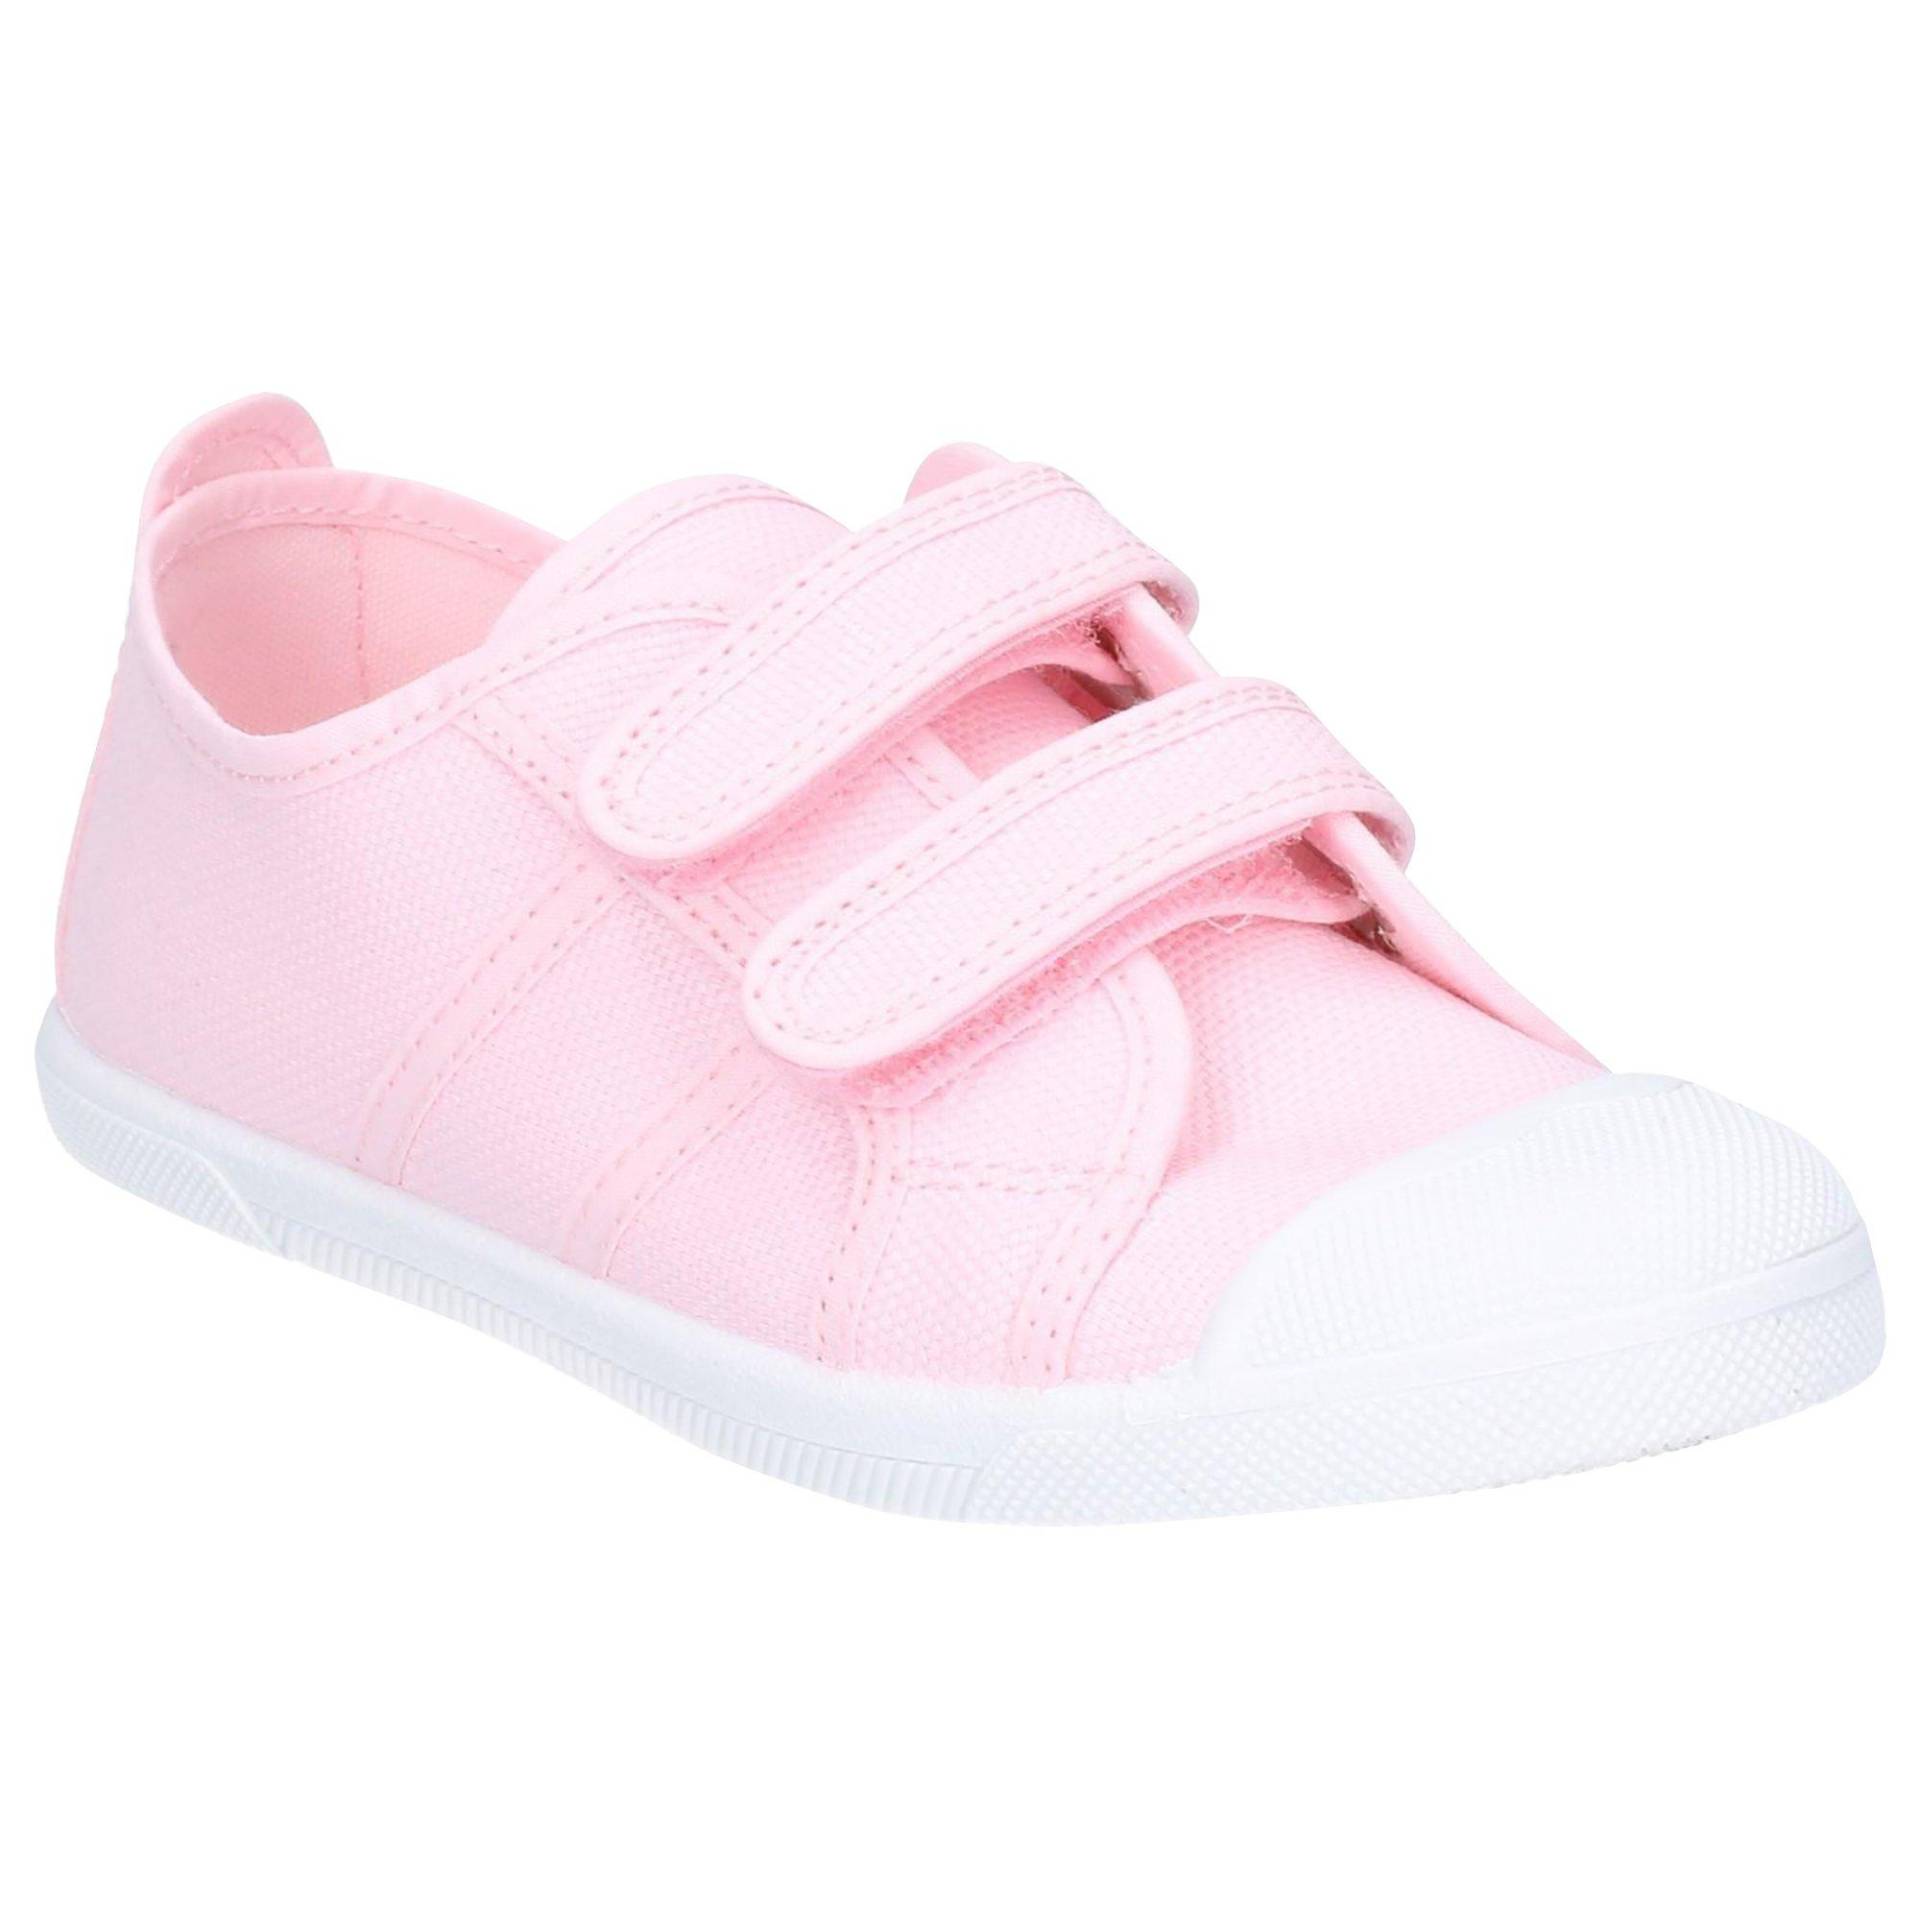 Schuhe Sasha Unisex Pink 33.5 von Flossy